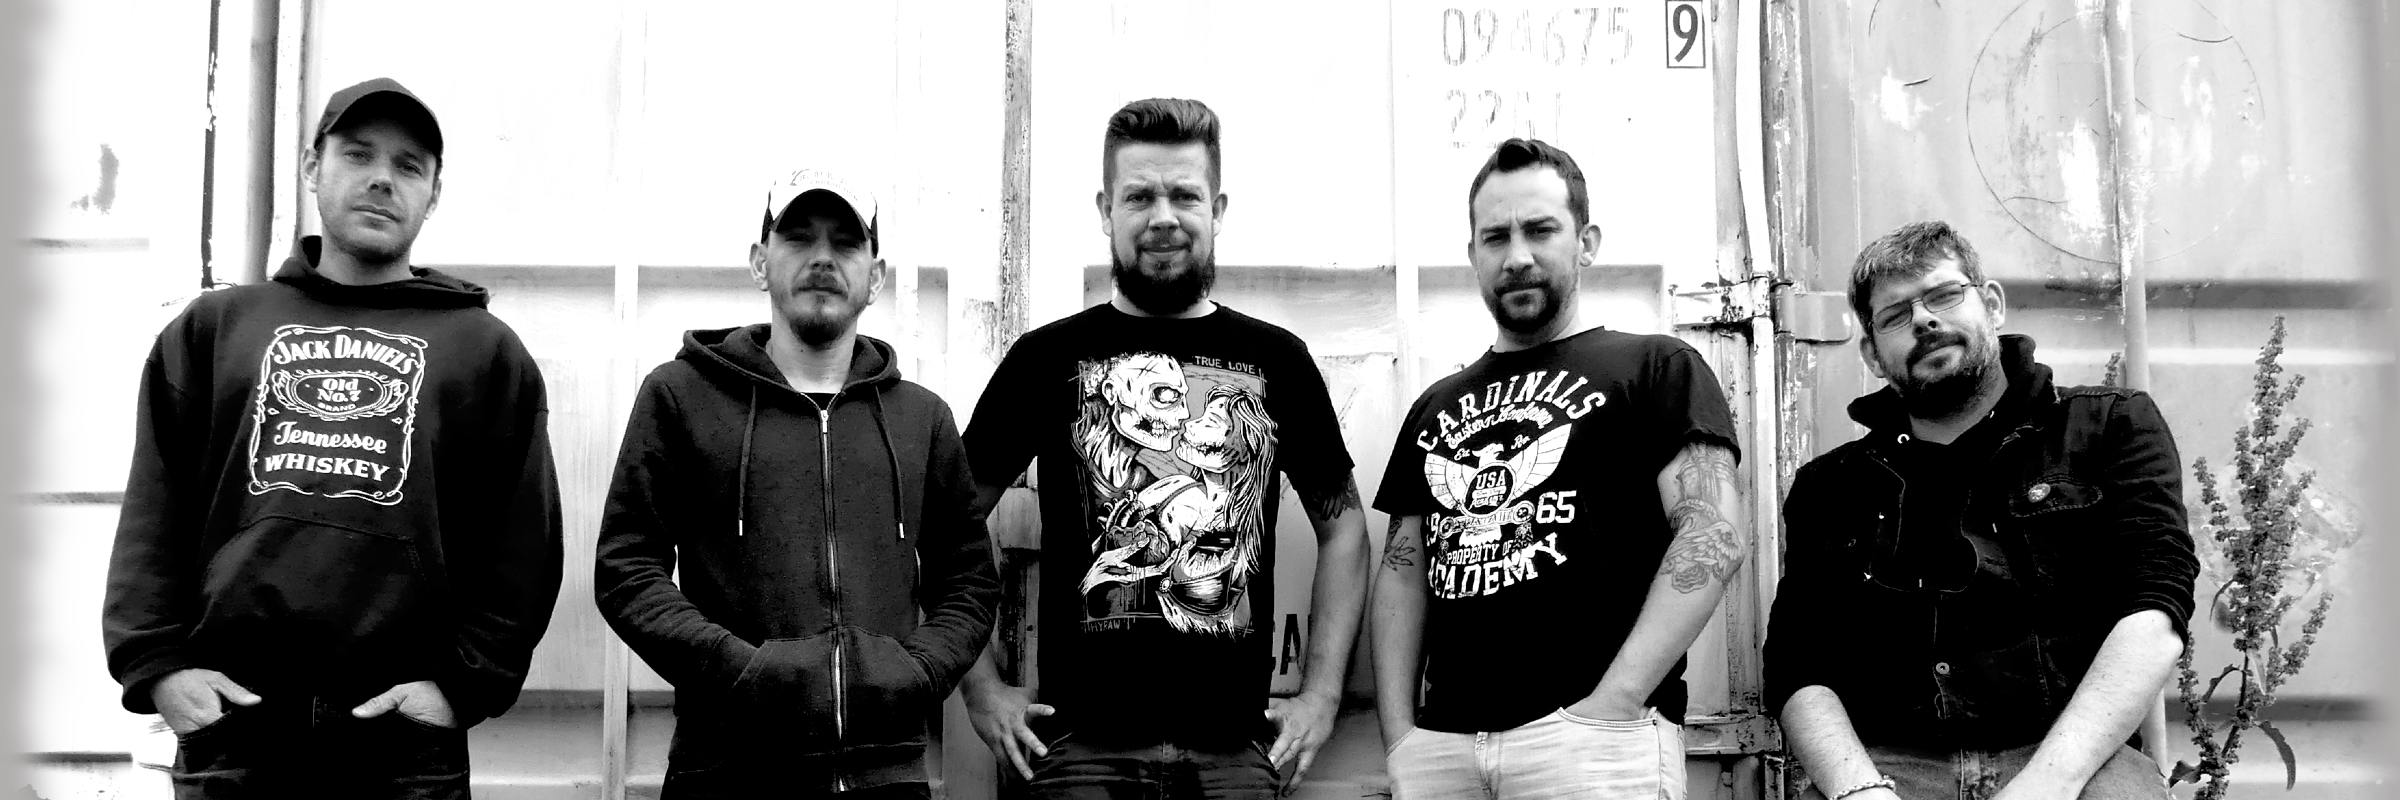 Boulons & Crew, groupe de musique Punk en représentation - photo de couverture